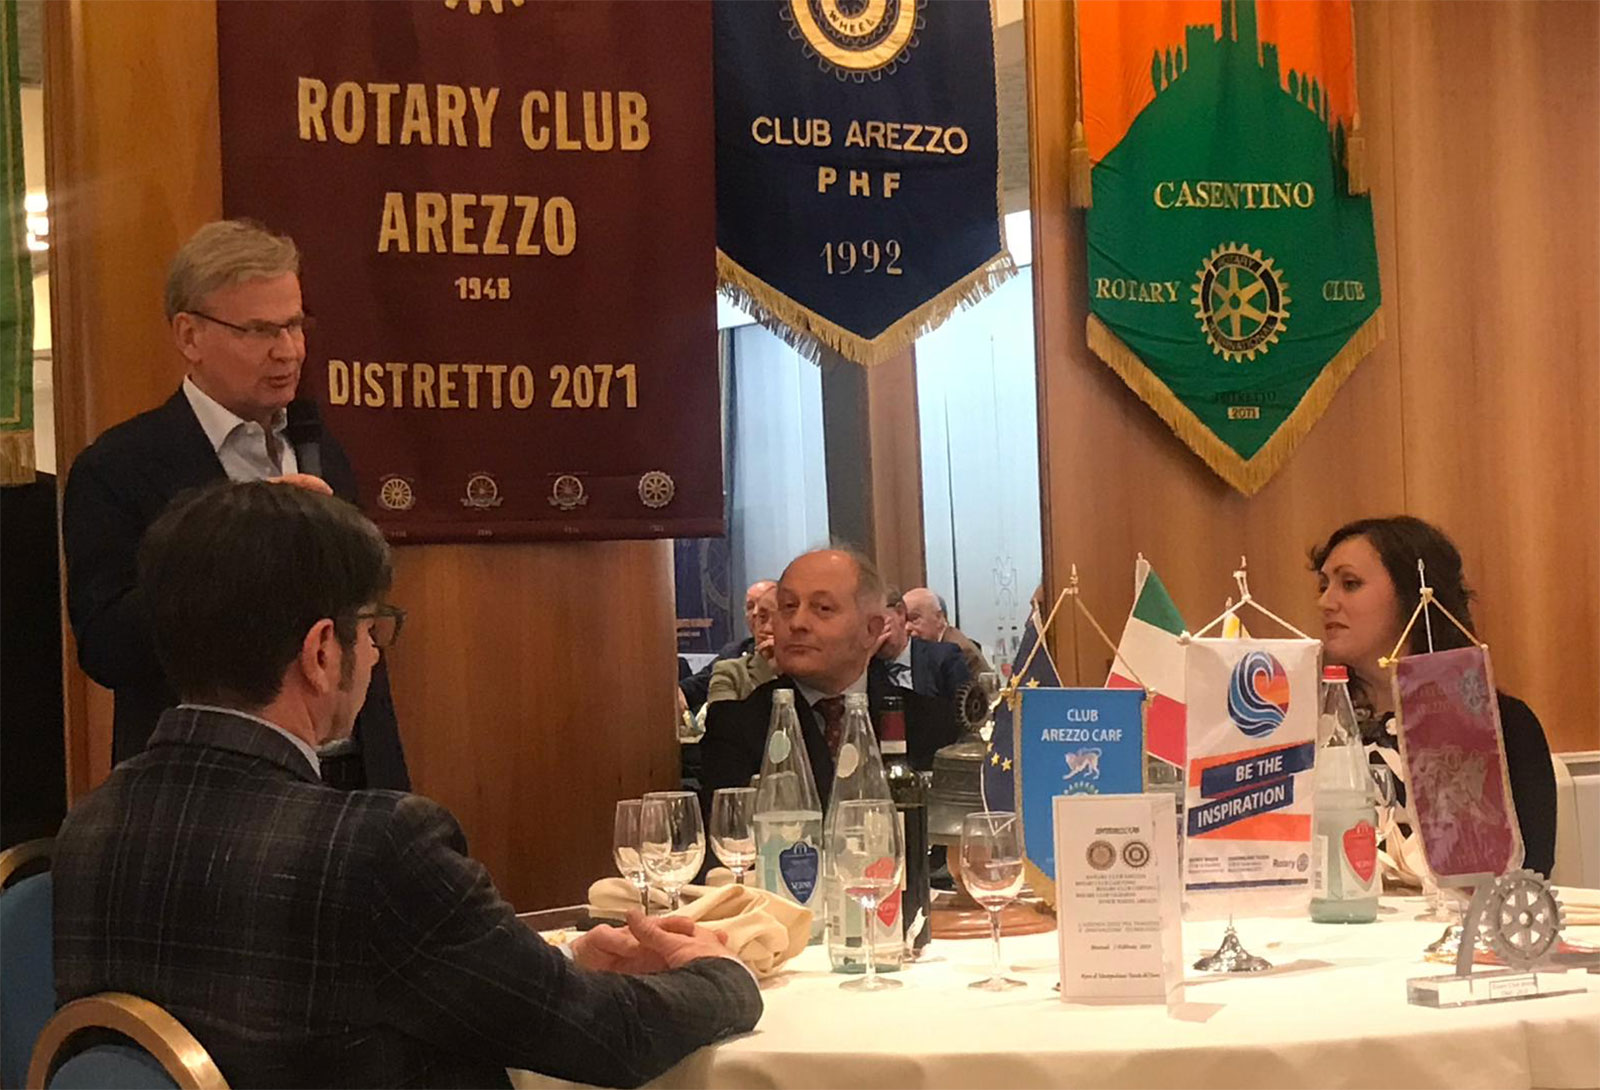 Grande serata ieri organizzata dal Rotary Club Arezzo in interclub con gli altri club del territorio aretino